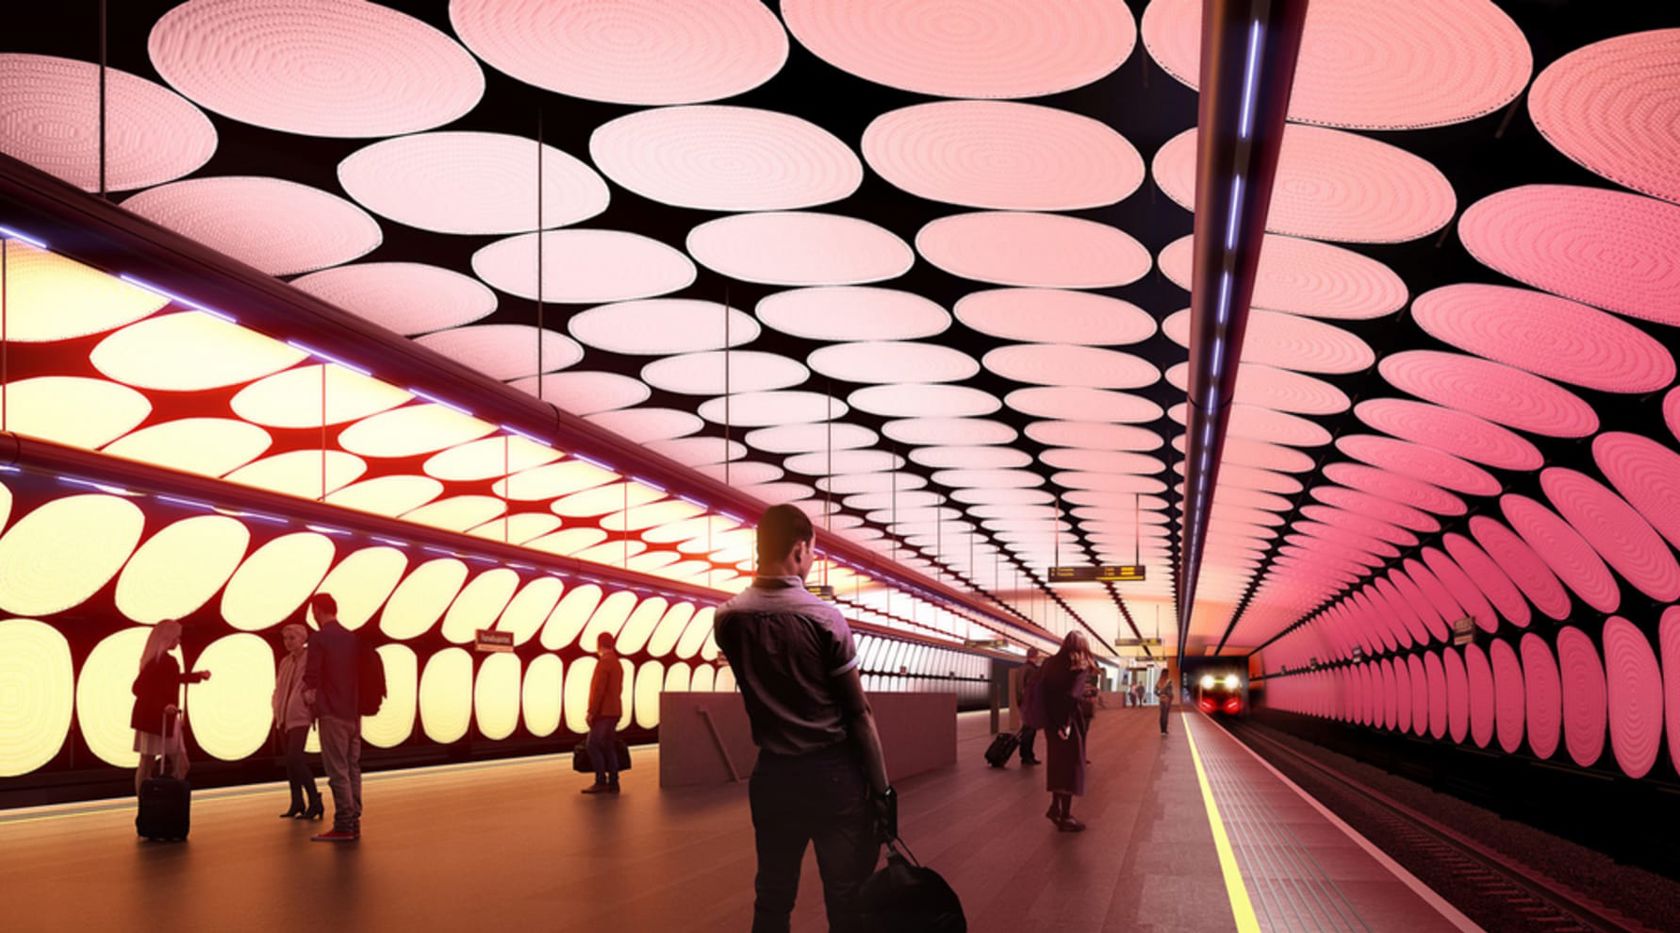 Oslo får nye T-banevogner til åpningen av Fornebubanen i 2027/28. Illustrasjon: Fornebu stasjon tegnet av Zaha Hadid Architects og A-lab.